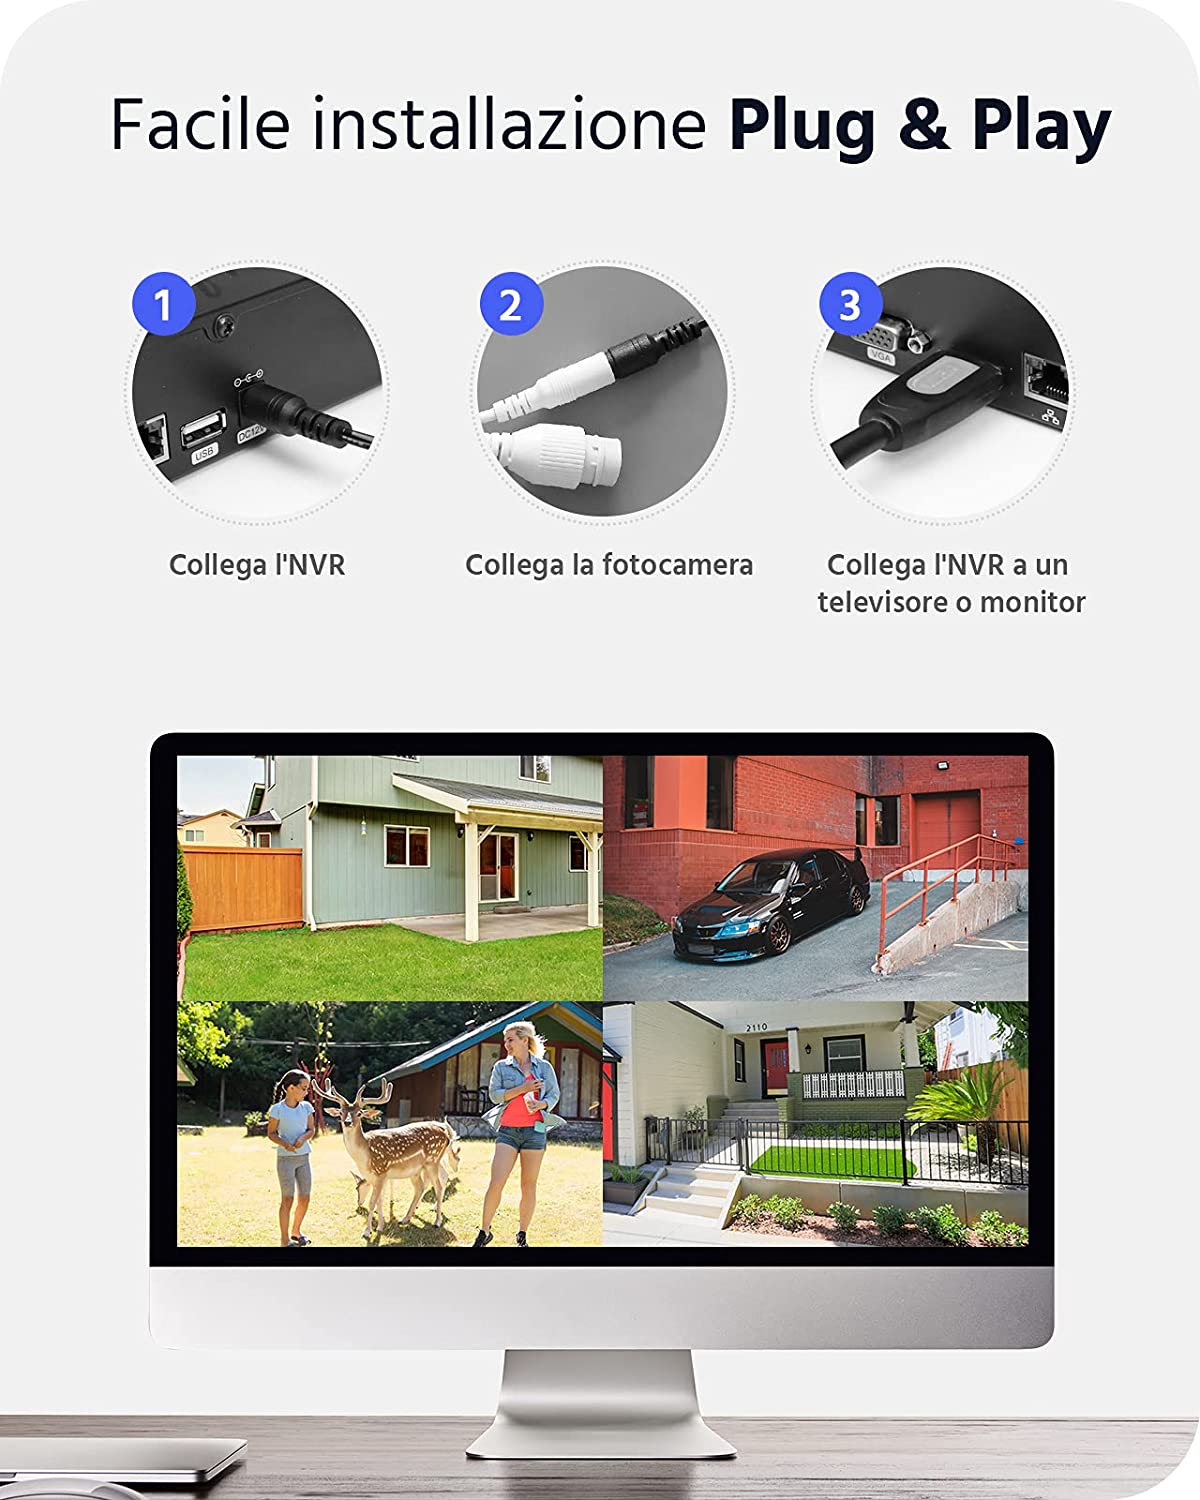 ANNKE Kit Videosorveglianza WiFi 3MP, NVR 8CH 5MP e 4 Telecamere wireless